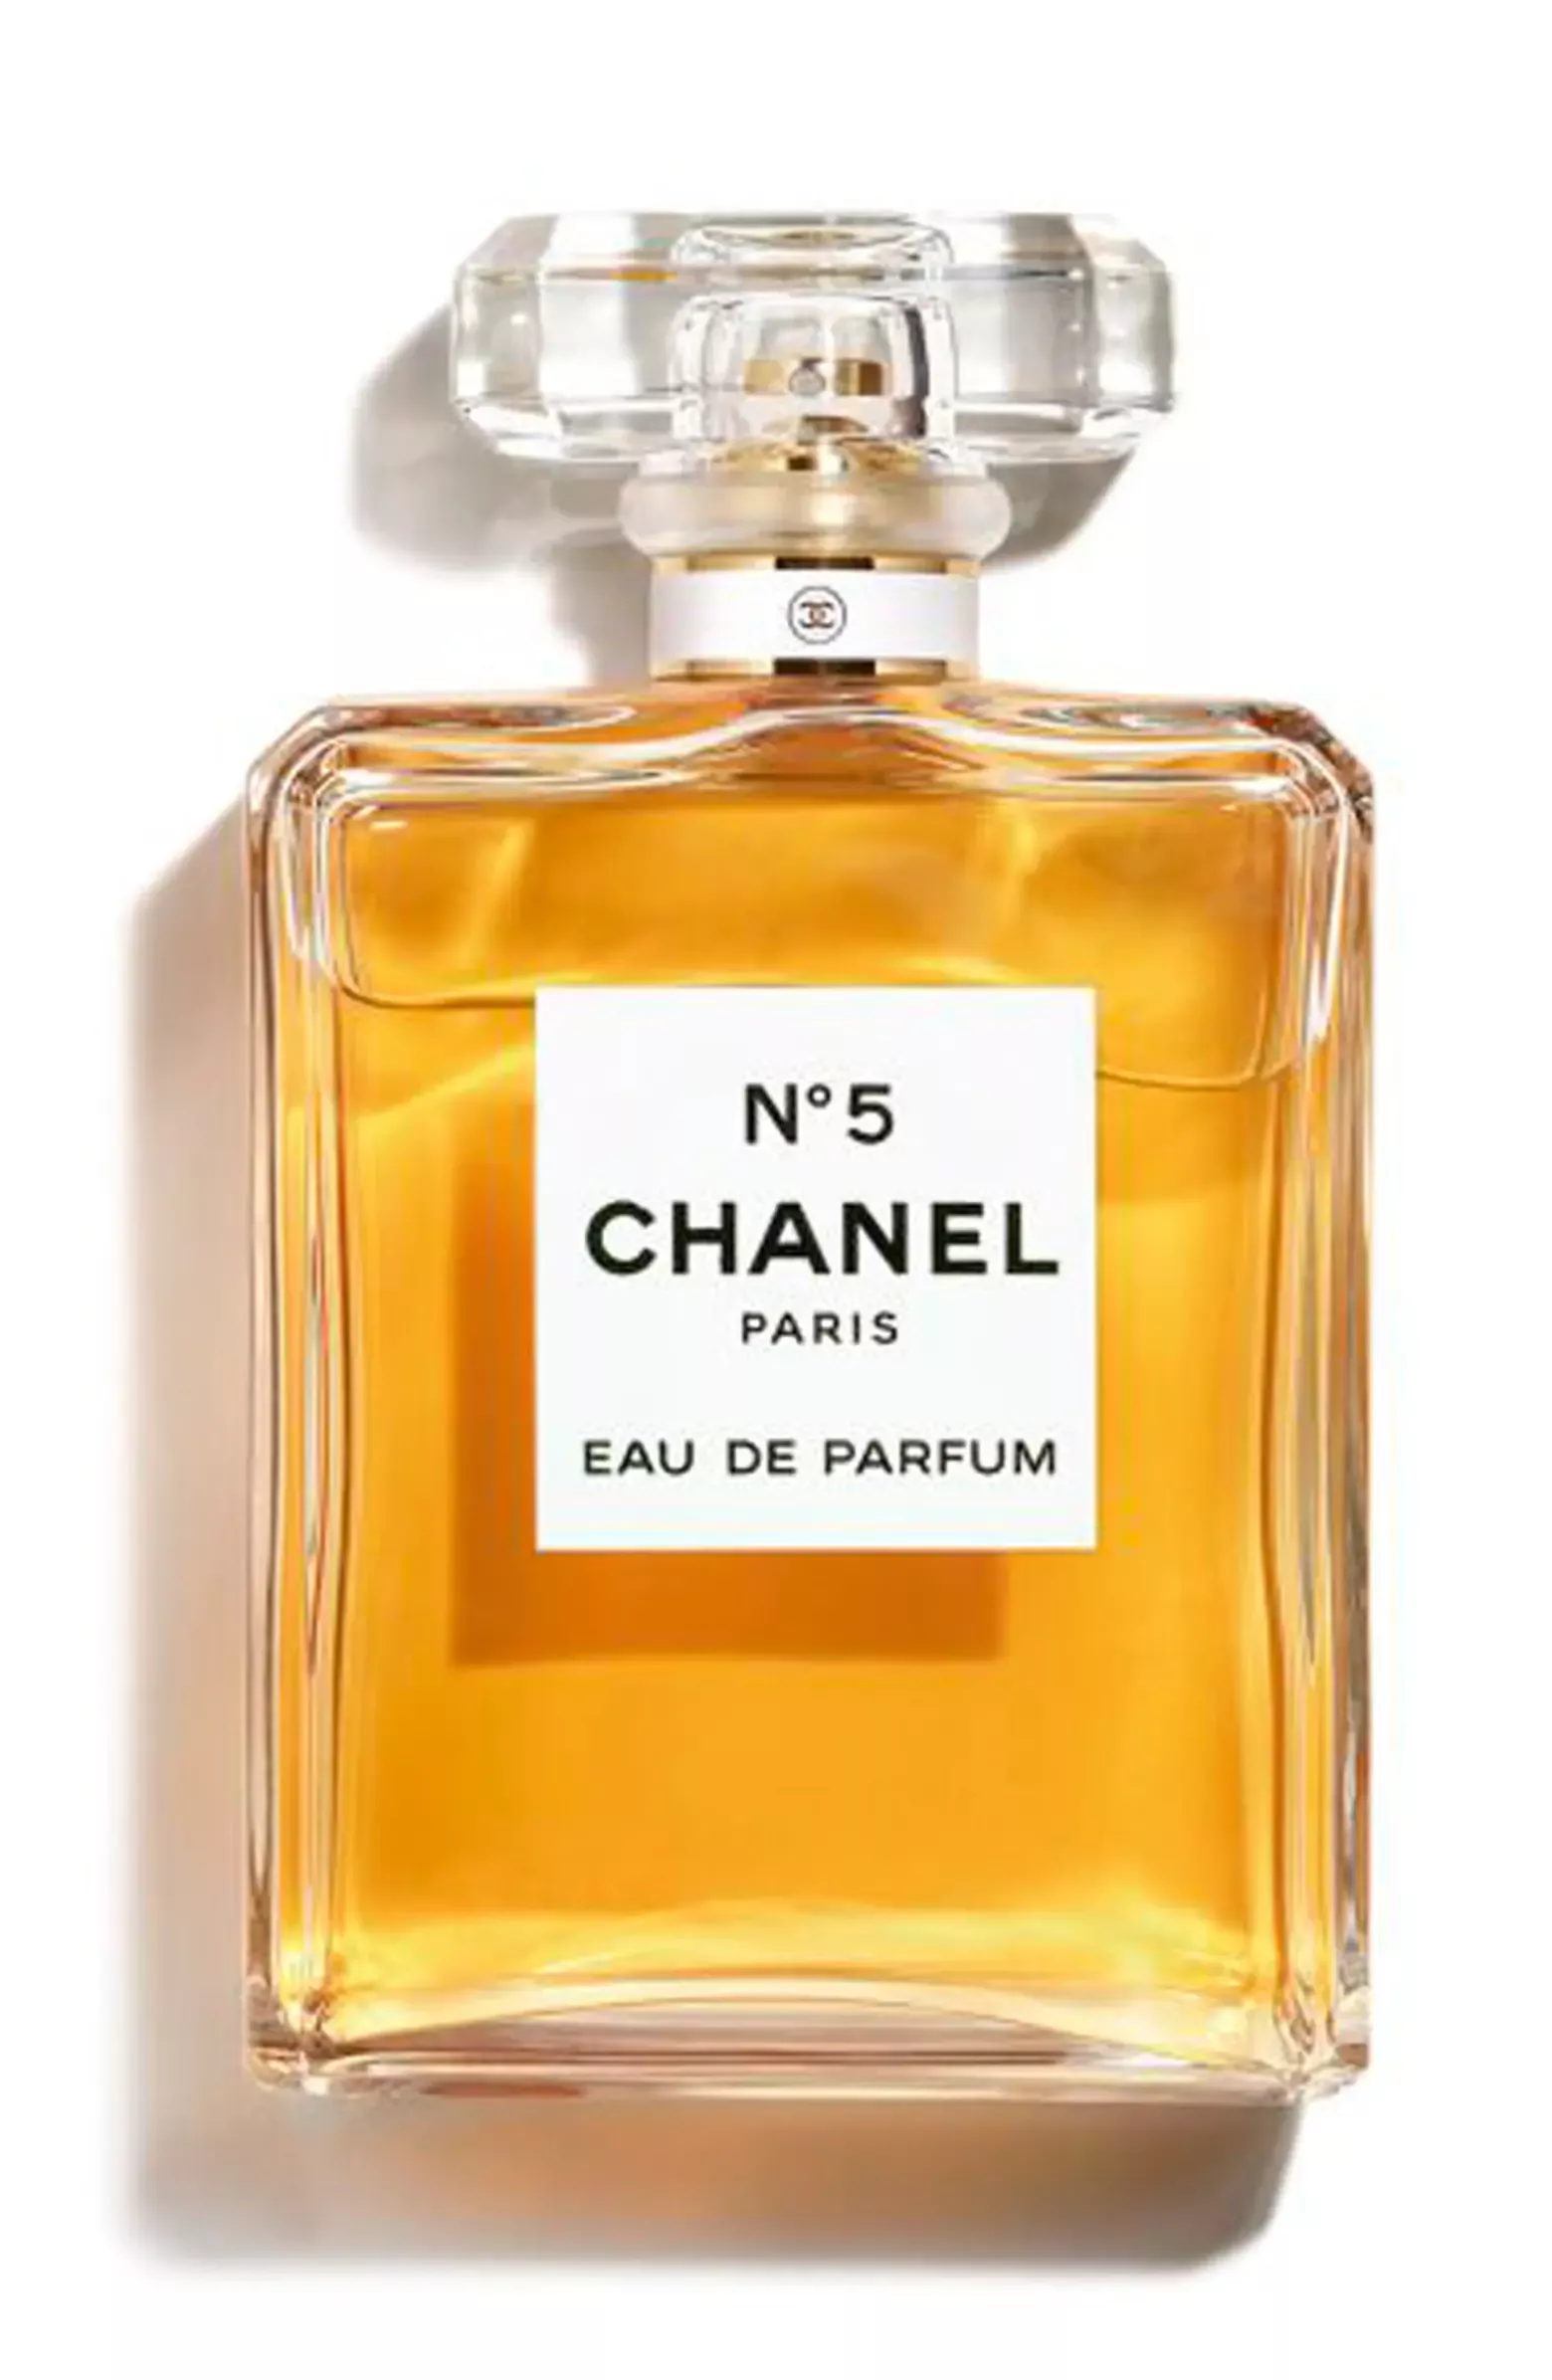 BLEU DE CHANEL Eau de Parfum Pour … curated on LTK